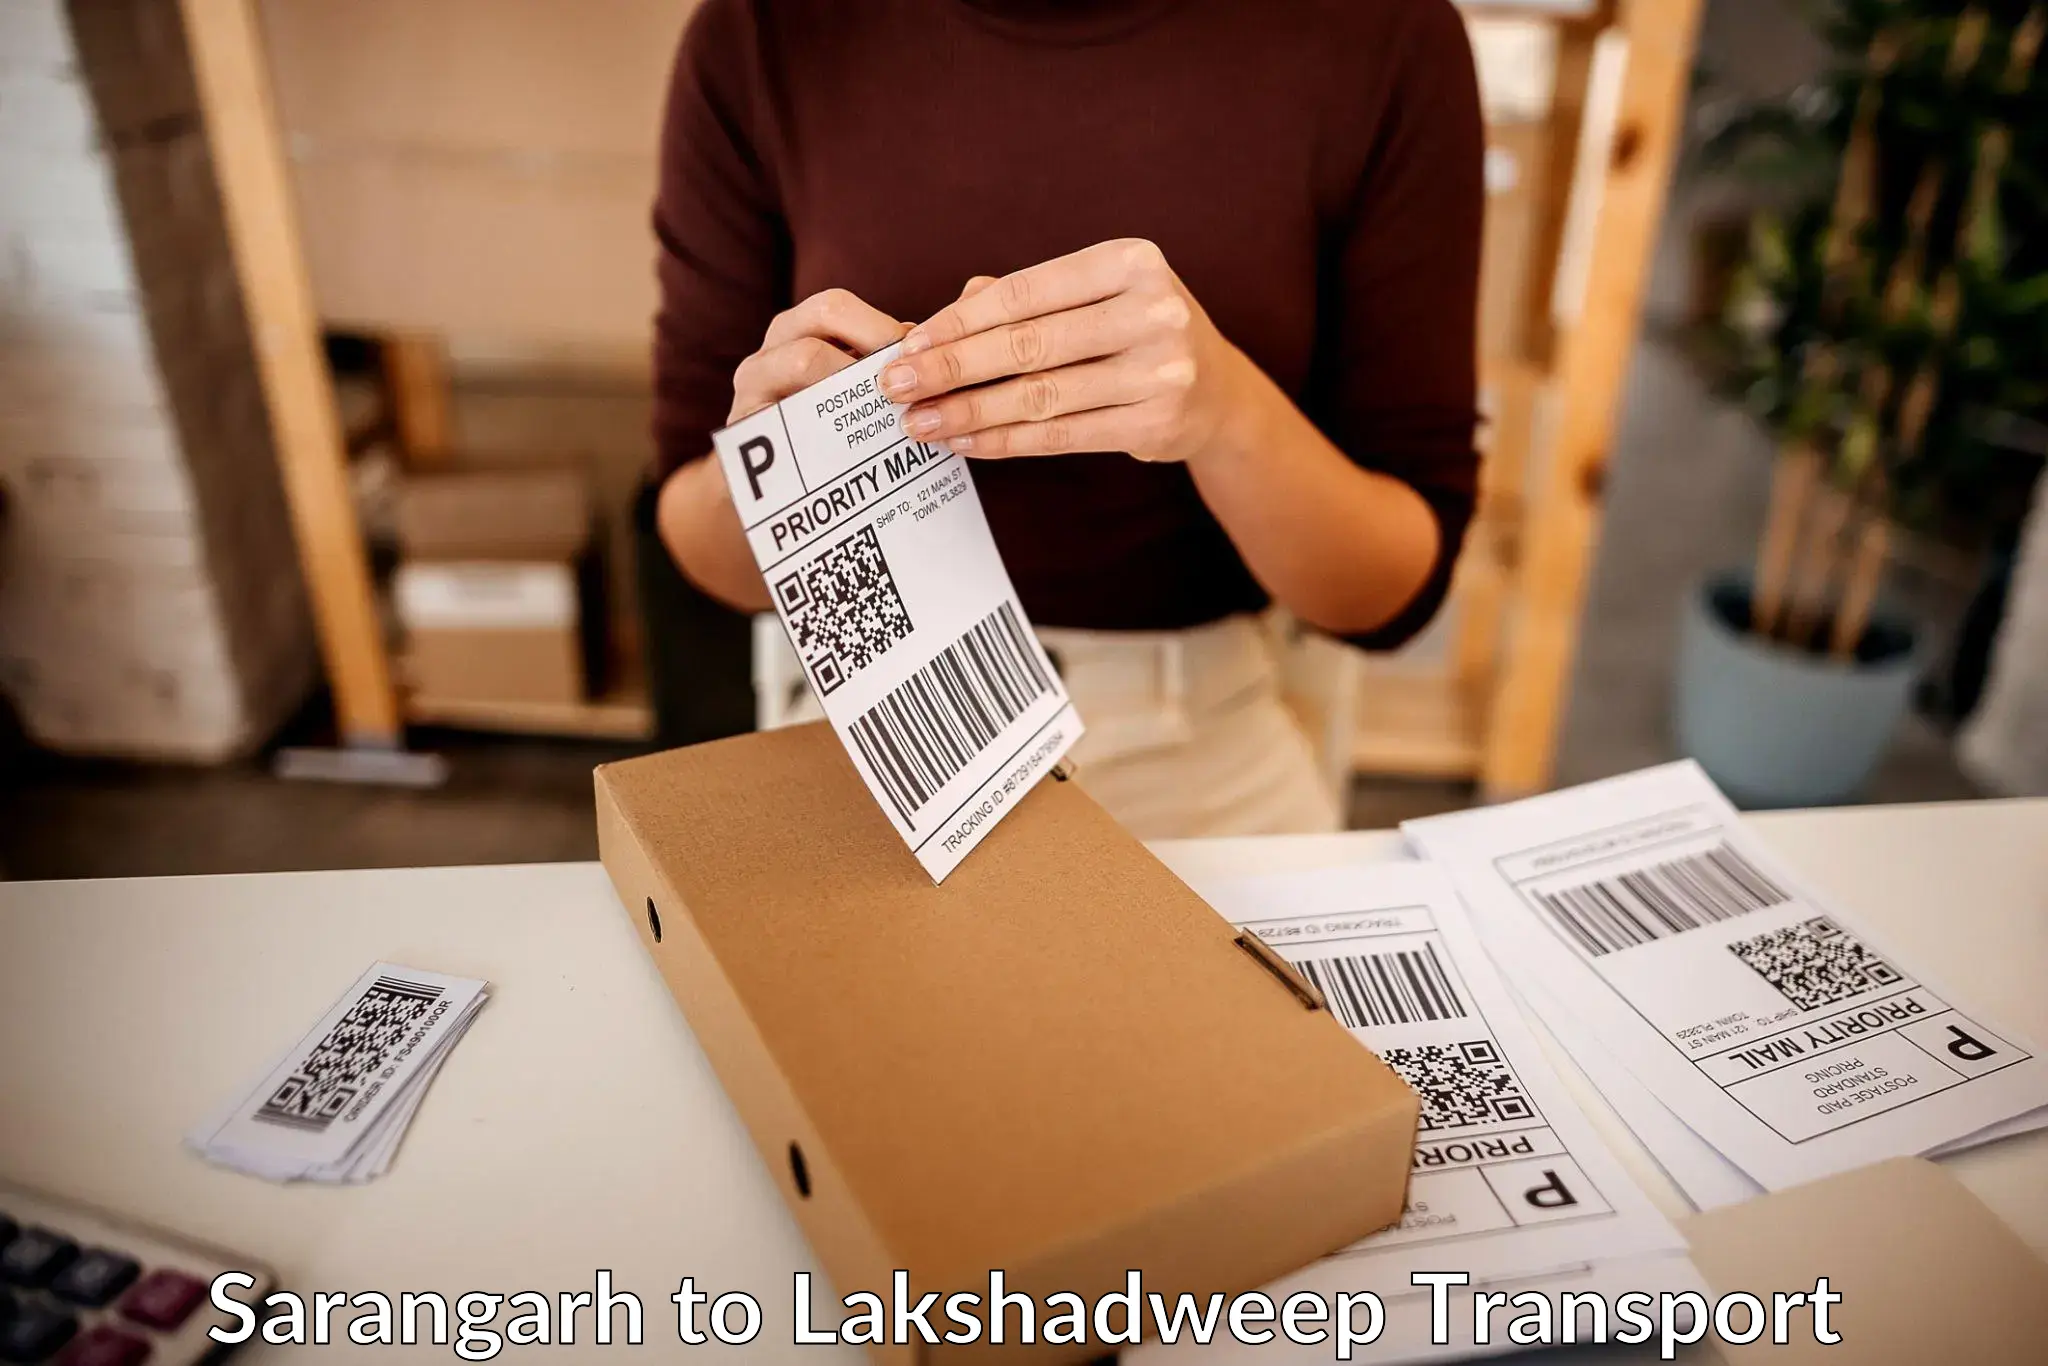 Furniture transport service Sarangarh to Lakshadweep